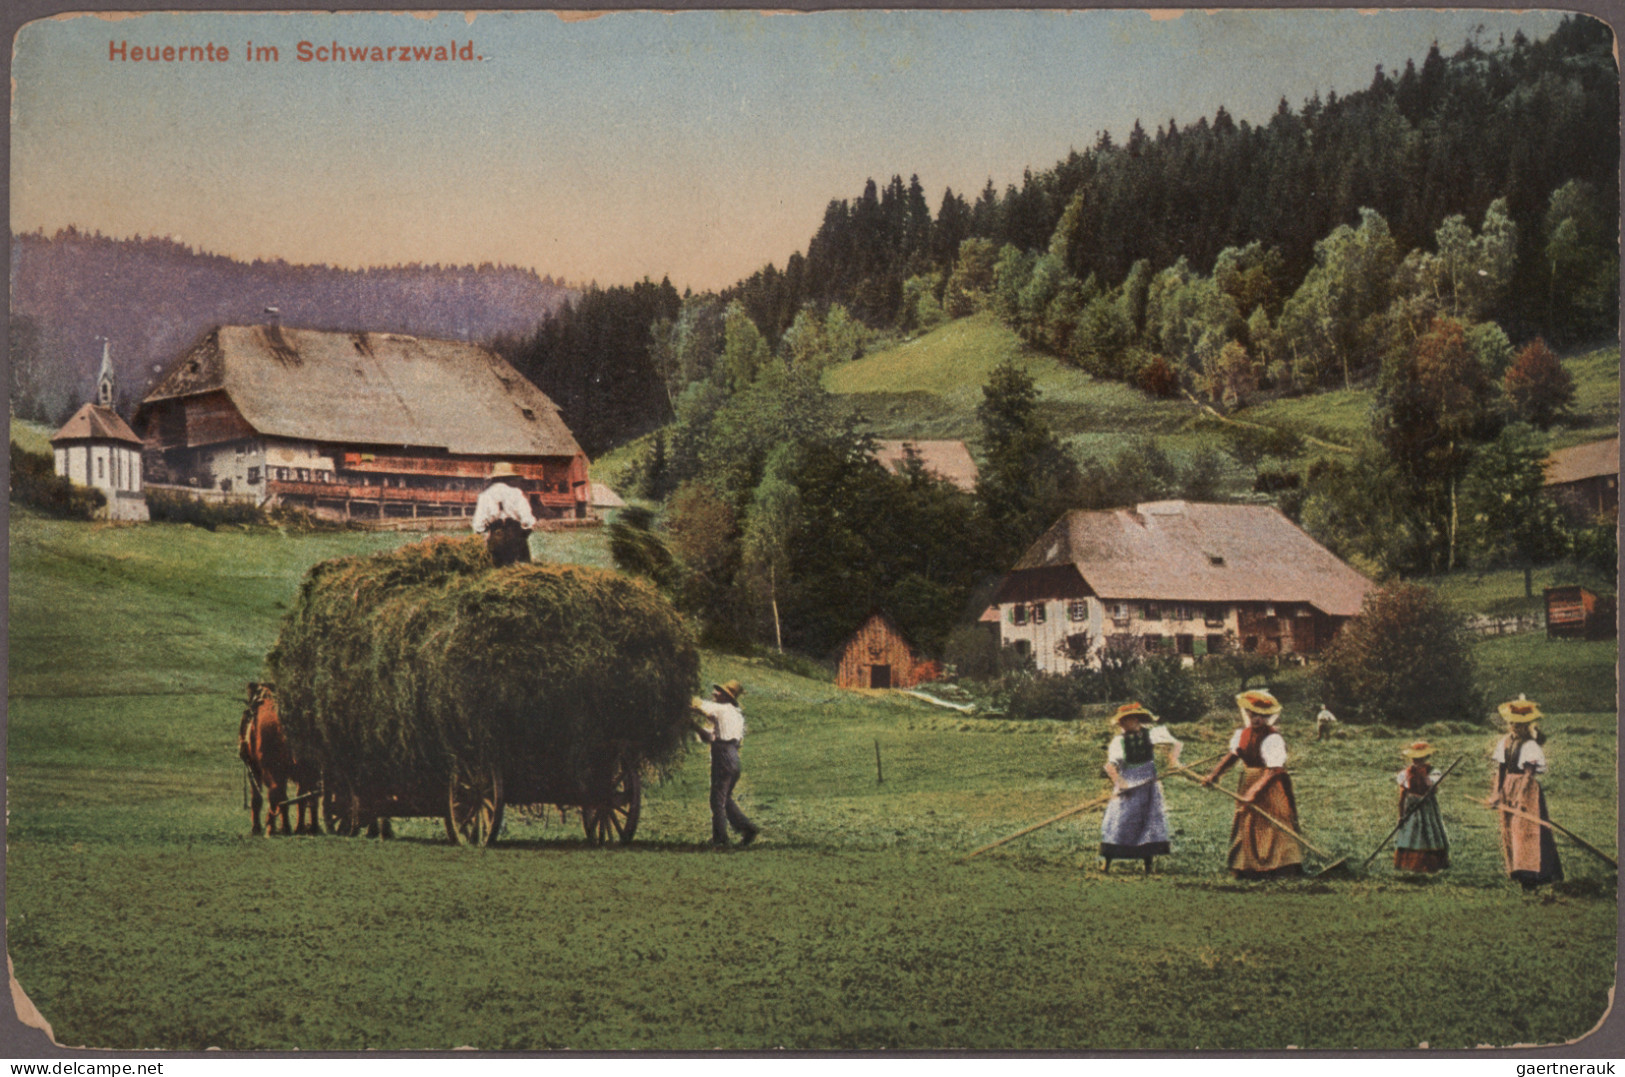 Ansichtskarten: 1890/1940 ca., Ansichtskartensammlung in 3 Ordnern mit über 700